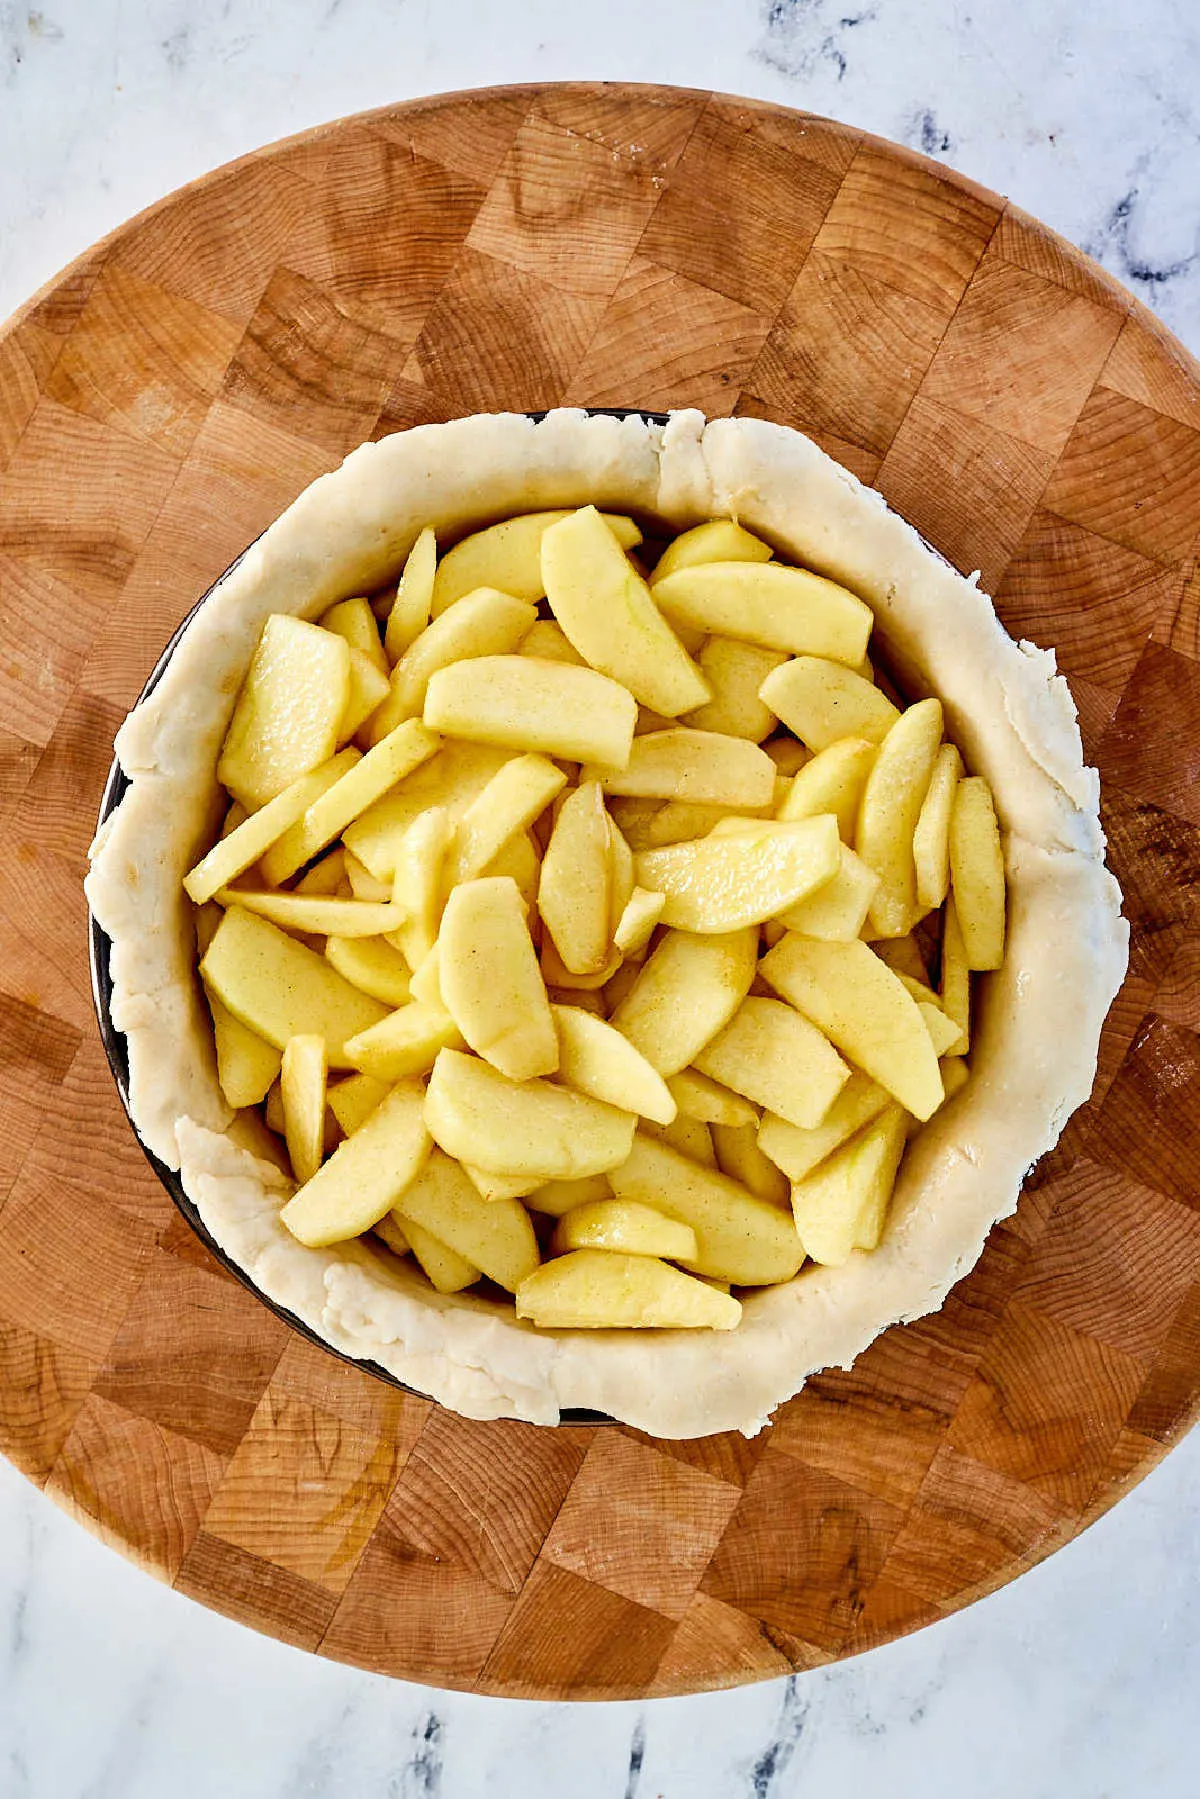 Apple slices in pie crust in pan.